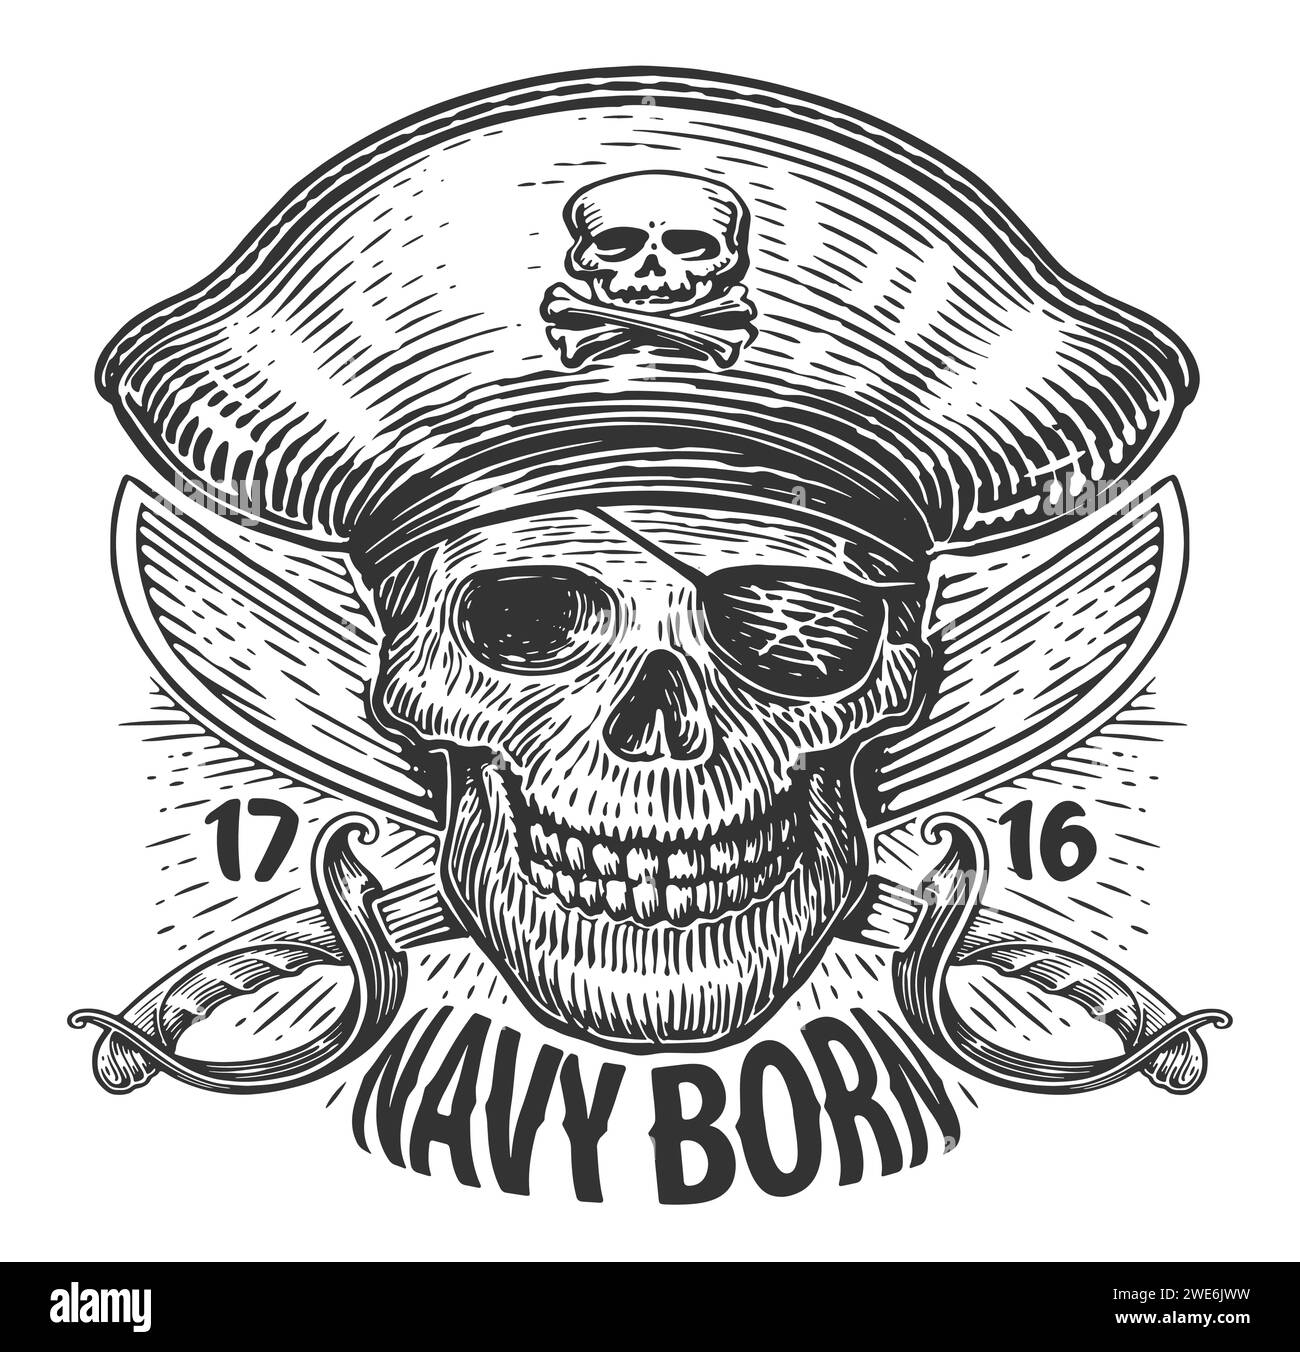 NAVY BORN. Teschio e sciabole incrociate. Jolly Roger, illustrazione vettoriale d'epoca dei pirati scheletrici Illustrazione Vettoriale